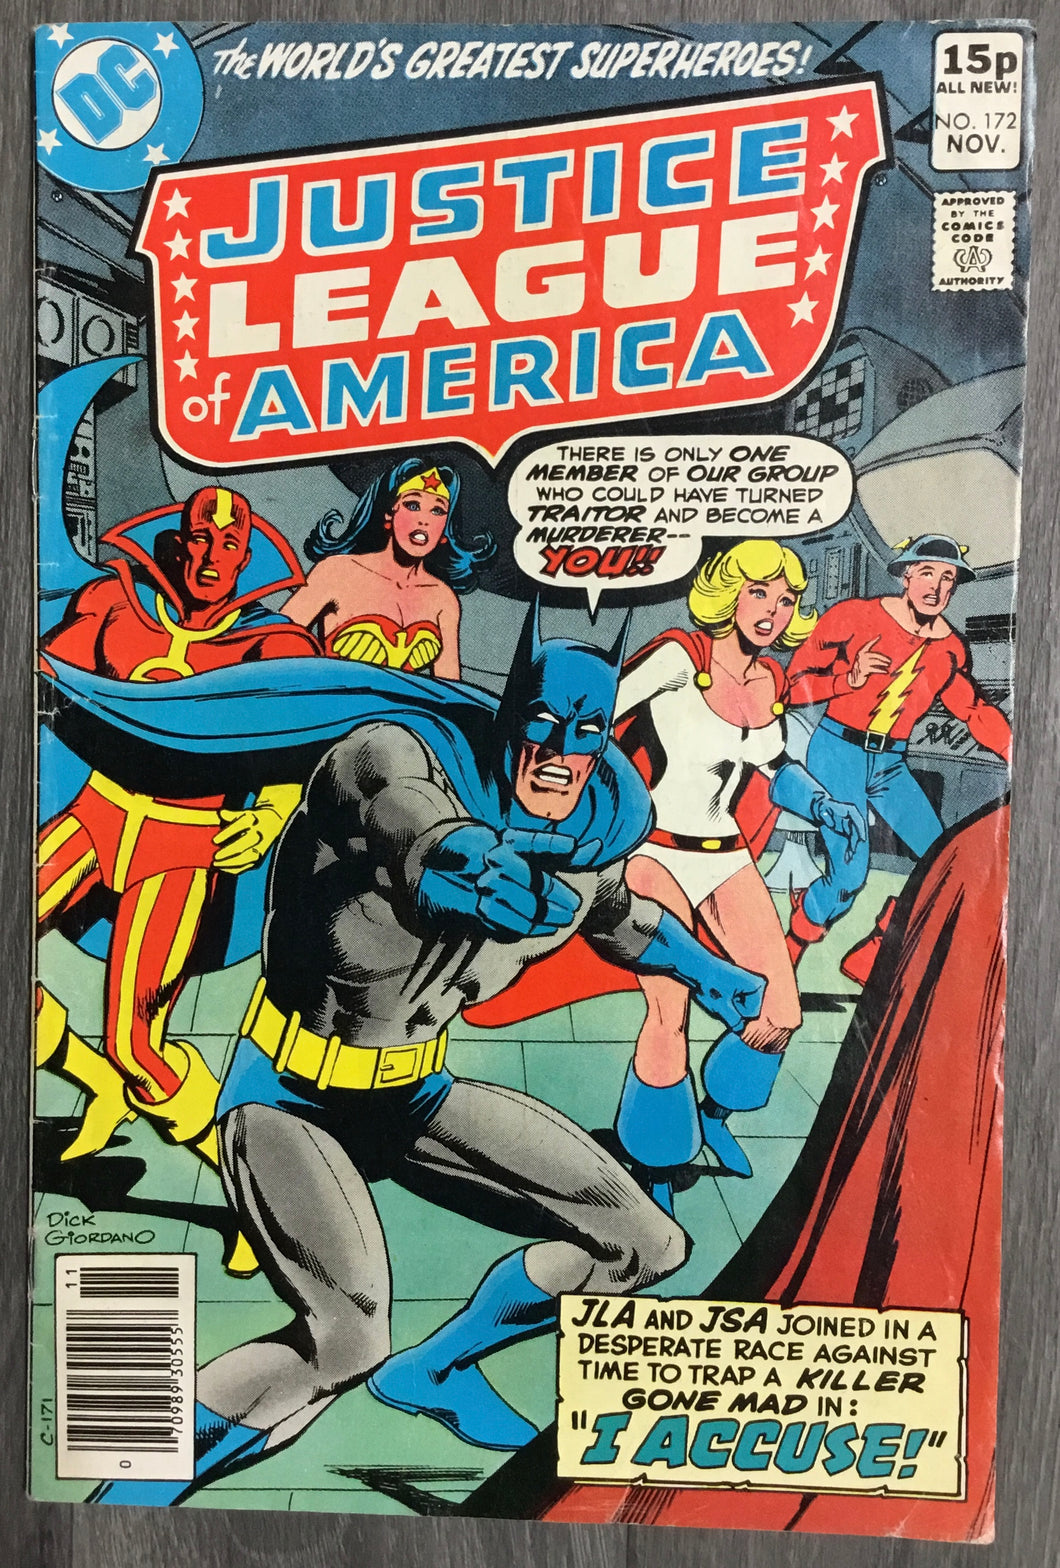 Justice League of America No. #172 1979 DC Comics